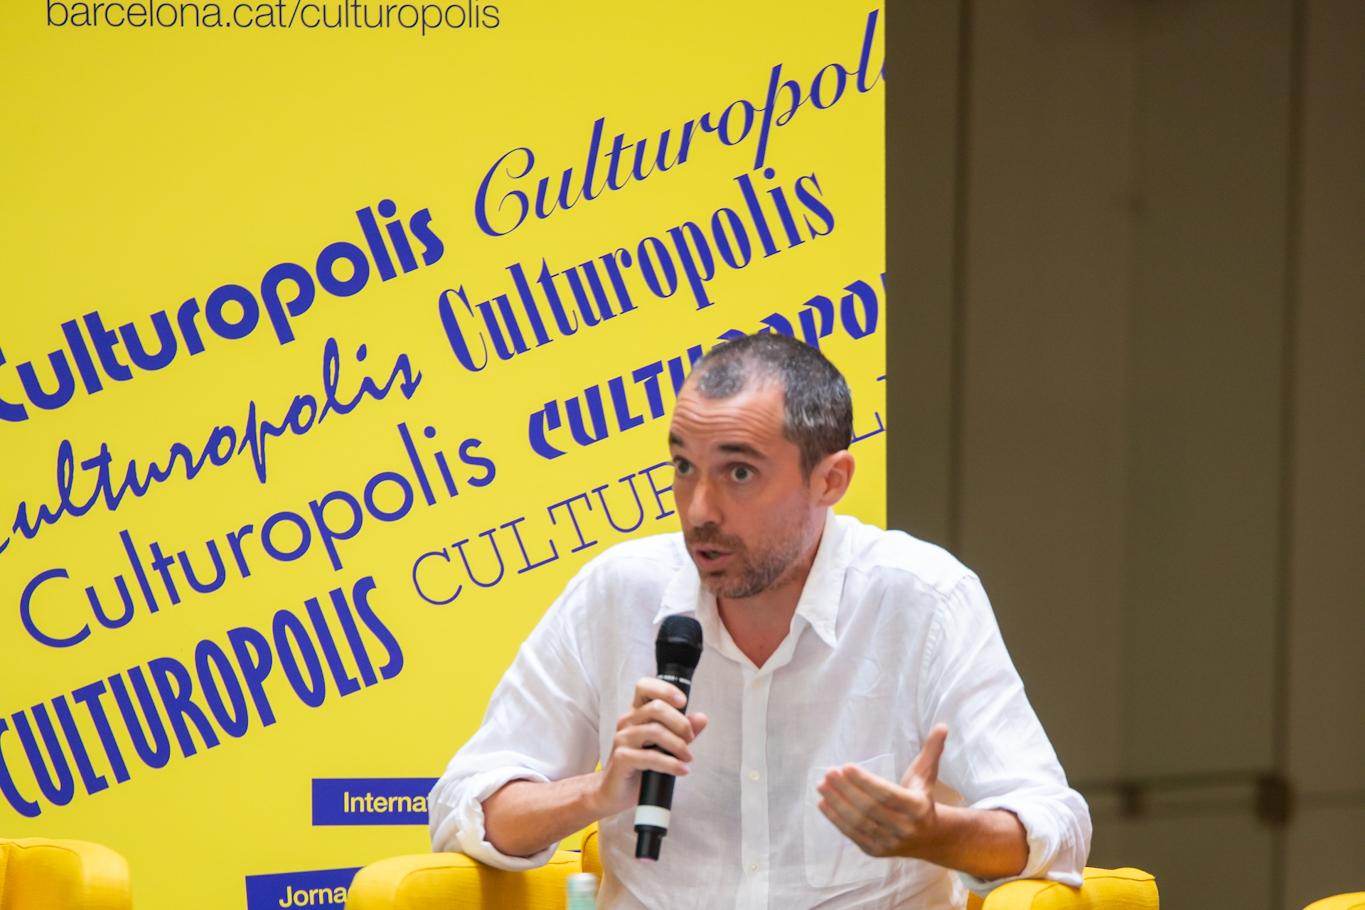 Nicolás Barbieri (Culturopolis)